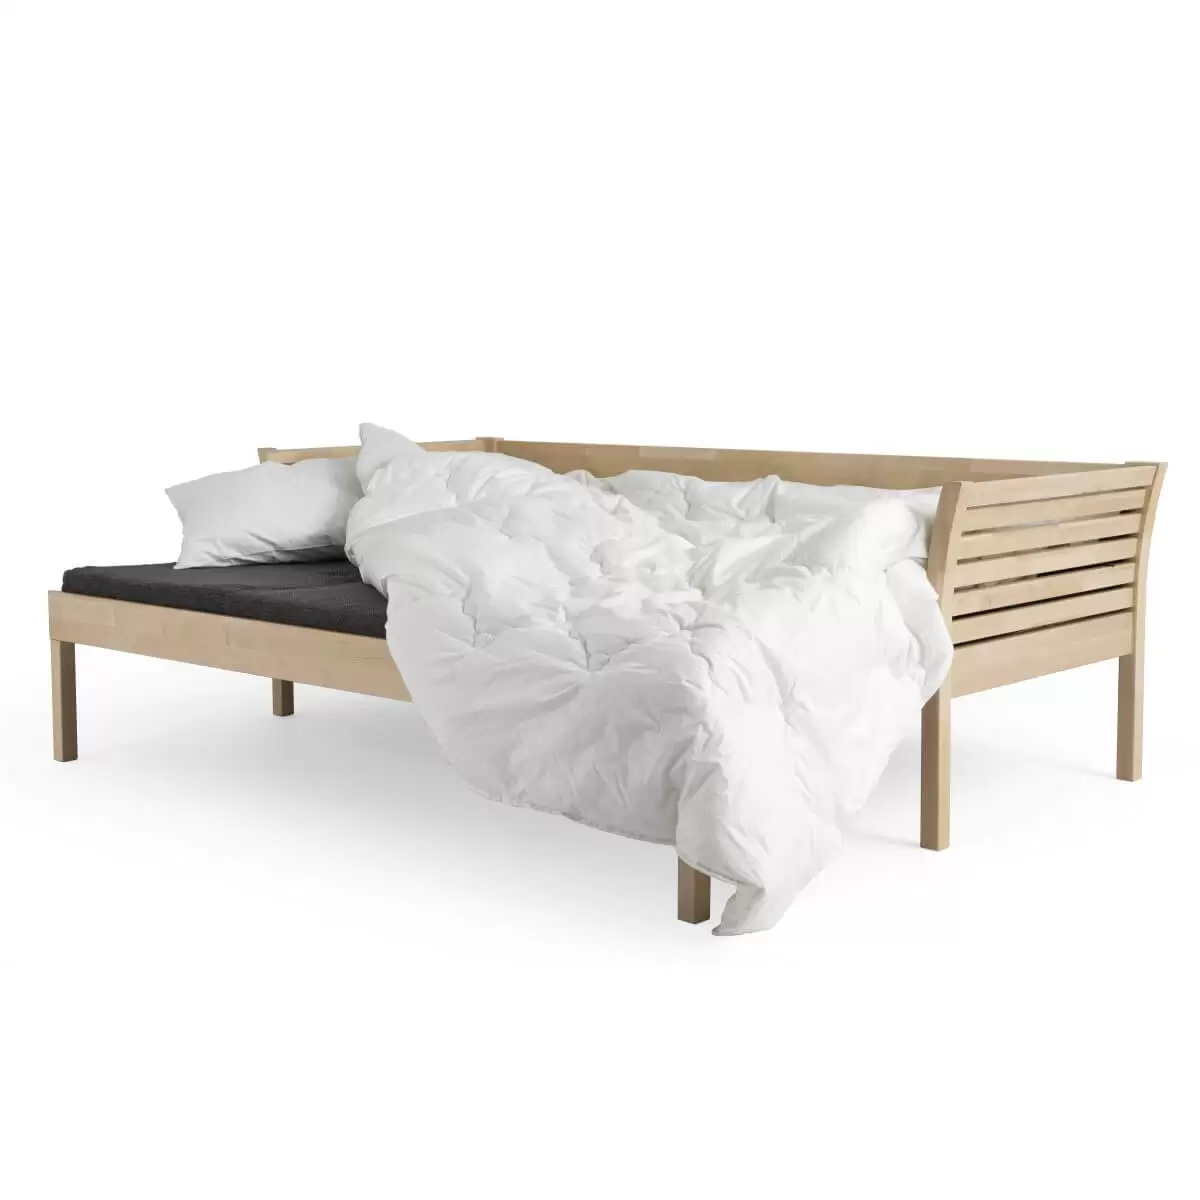 Sofa skandynawska z funkcją spania KANERVA rozłożona razem z pościelą na szarym materacu